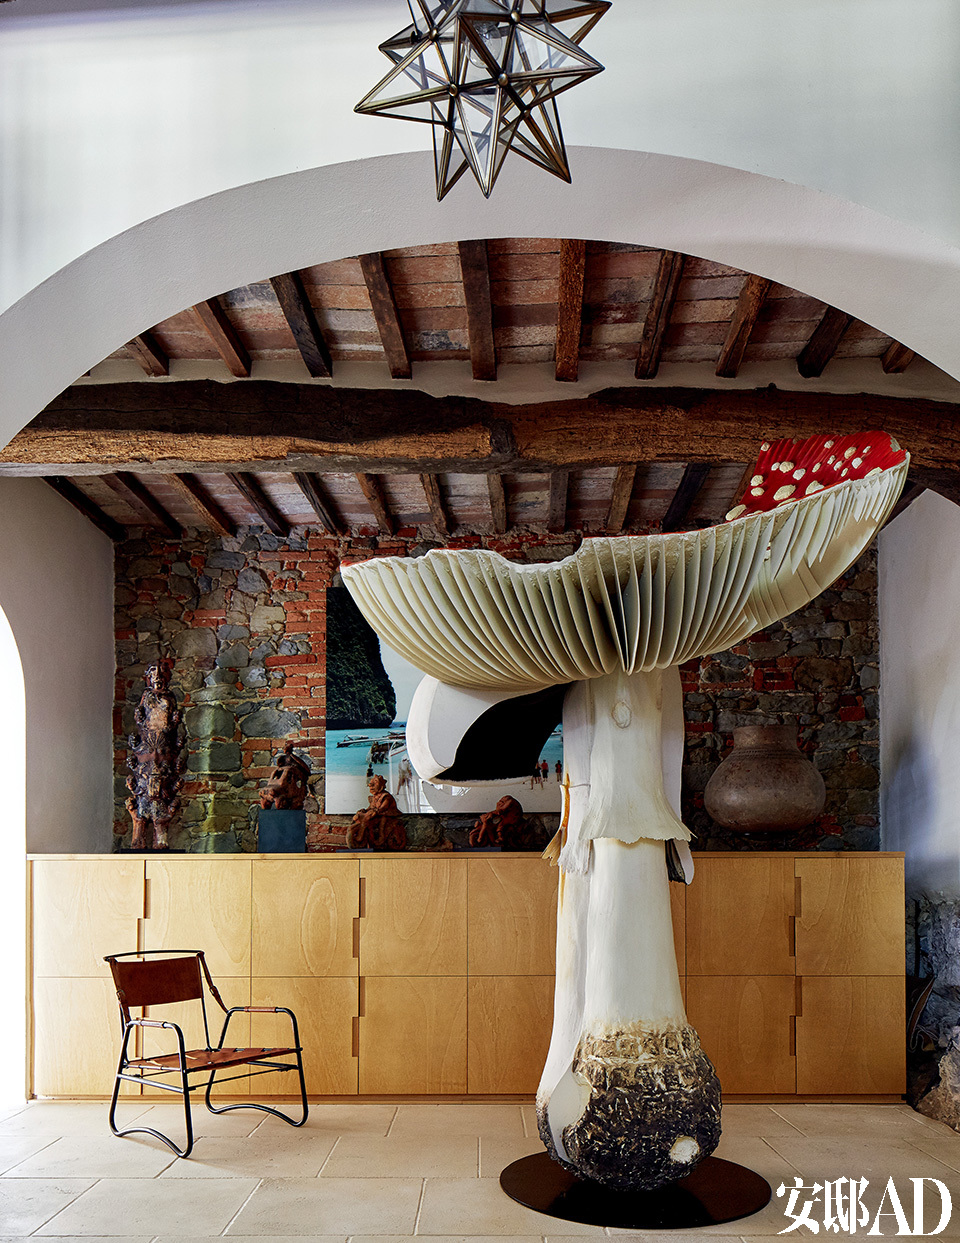 铁制皮革面料座椅由Jacques
Adnet设计。2.6米高的Giant Triple Mushroom 大蘑菇艺术摆件来自Carsten Höller。后方的摄影作品来自意大利摄影师Francesco
Jodice。